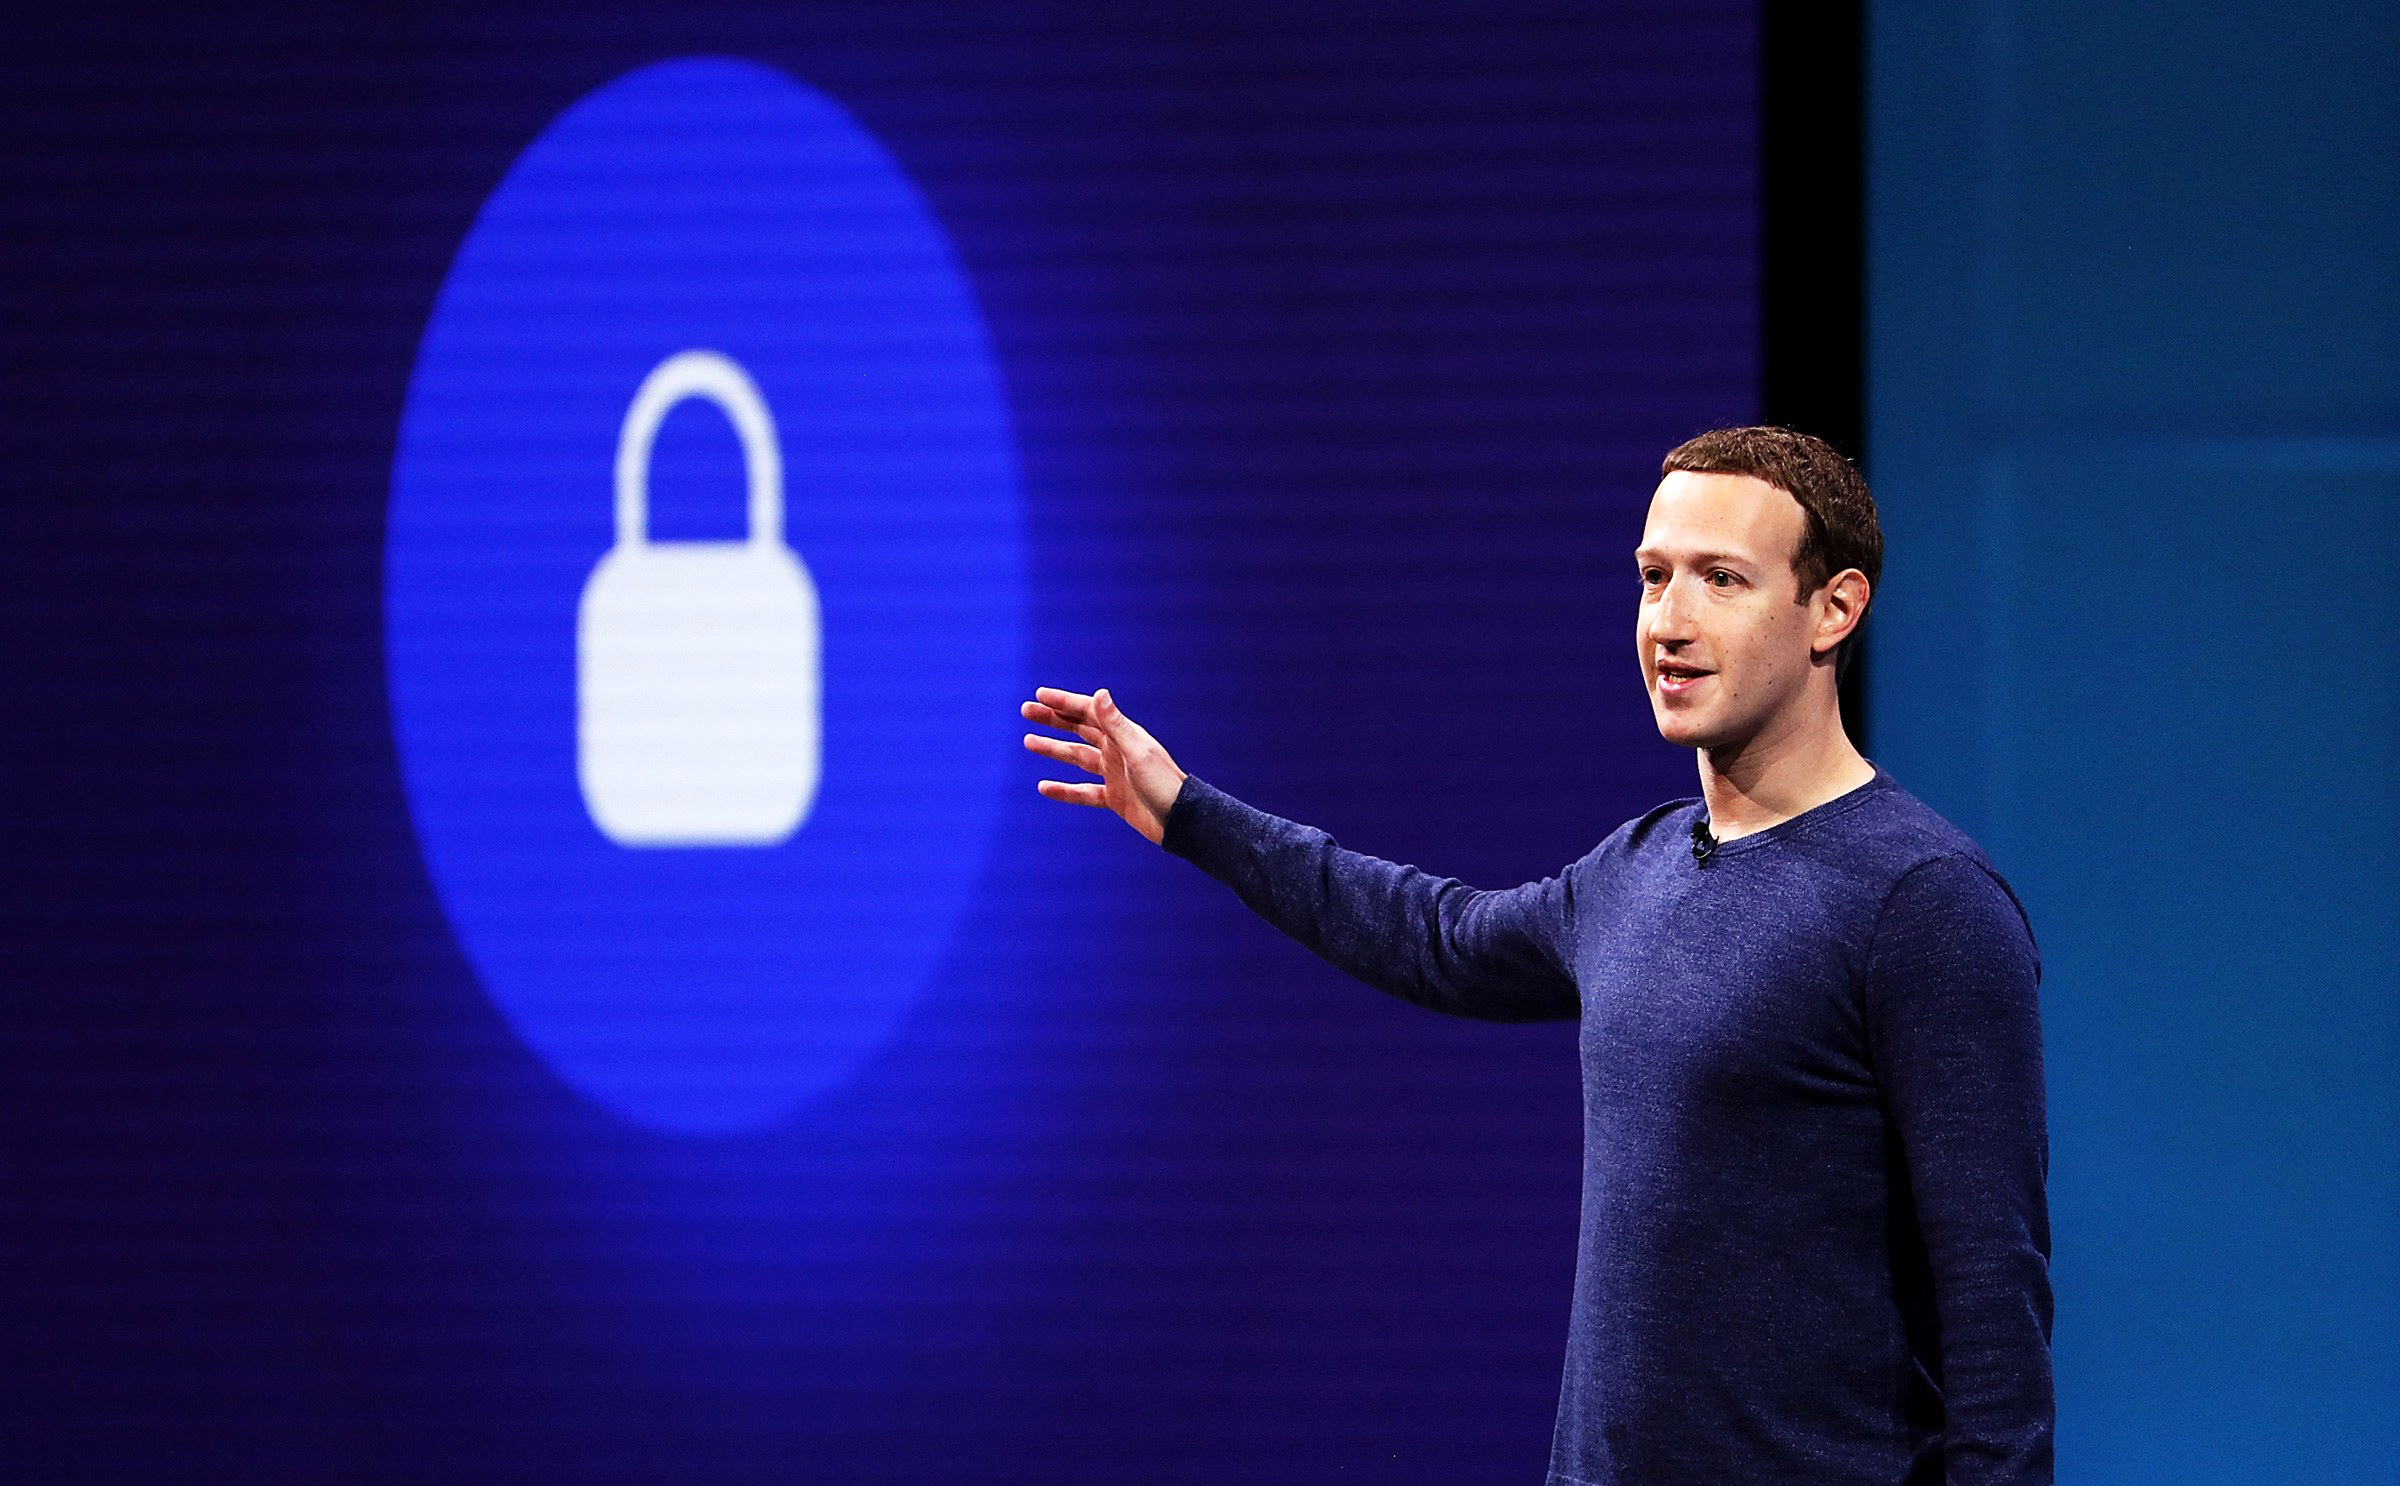 Mọi thứ cần biết về vụ Facebook bị hack: 30 triệu người bị trộm thông tin cá nhân